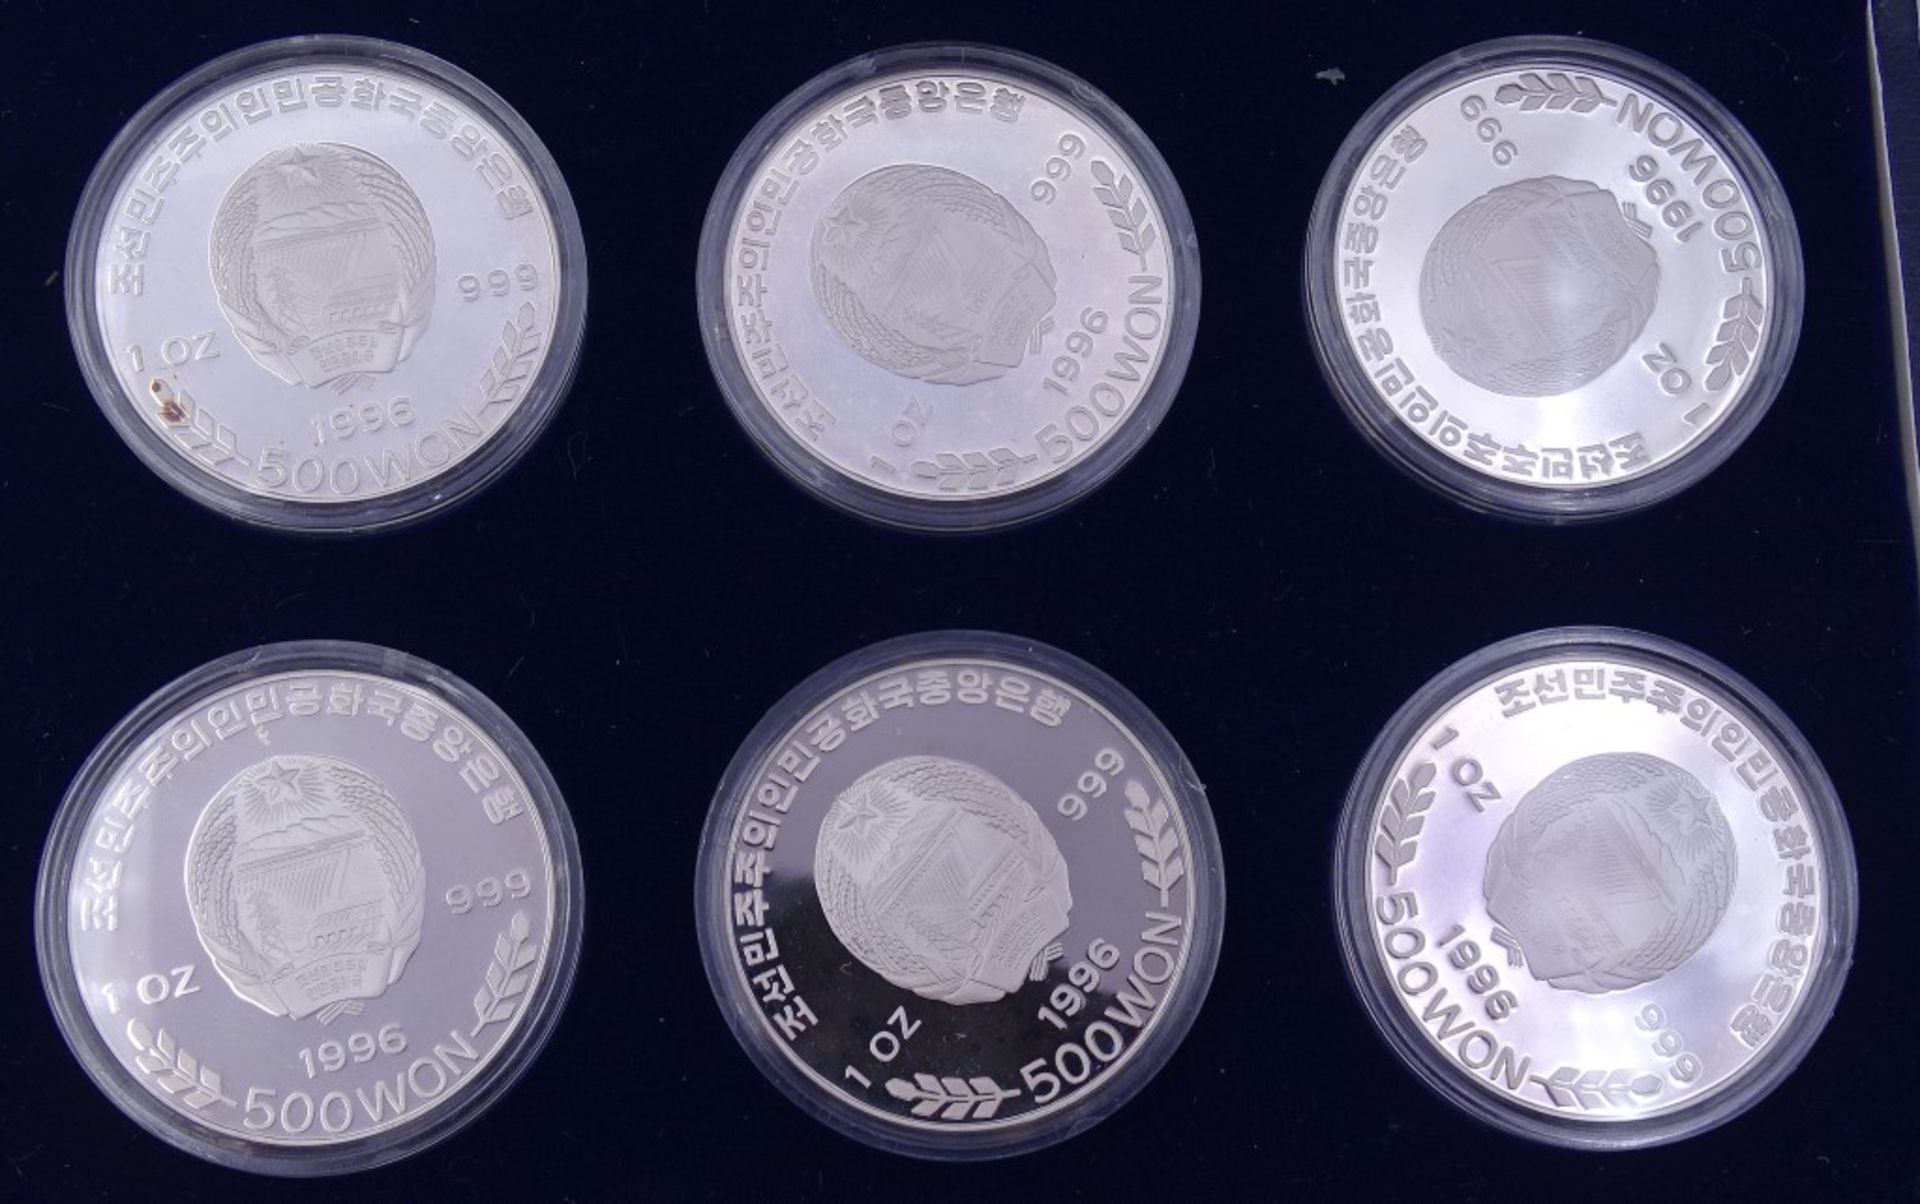 6x 1 Oz Feinsilber 999 Münzen je 500 Won 1996 in Schachtel,Limitierte Auflage - Bild 3 aus 3